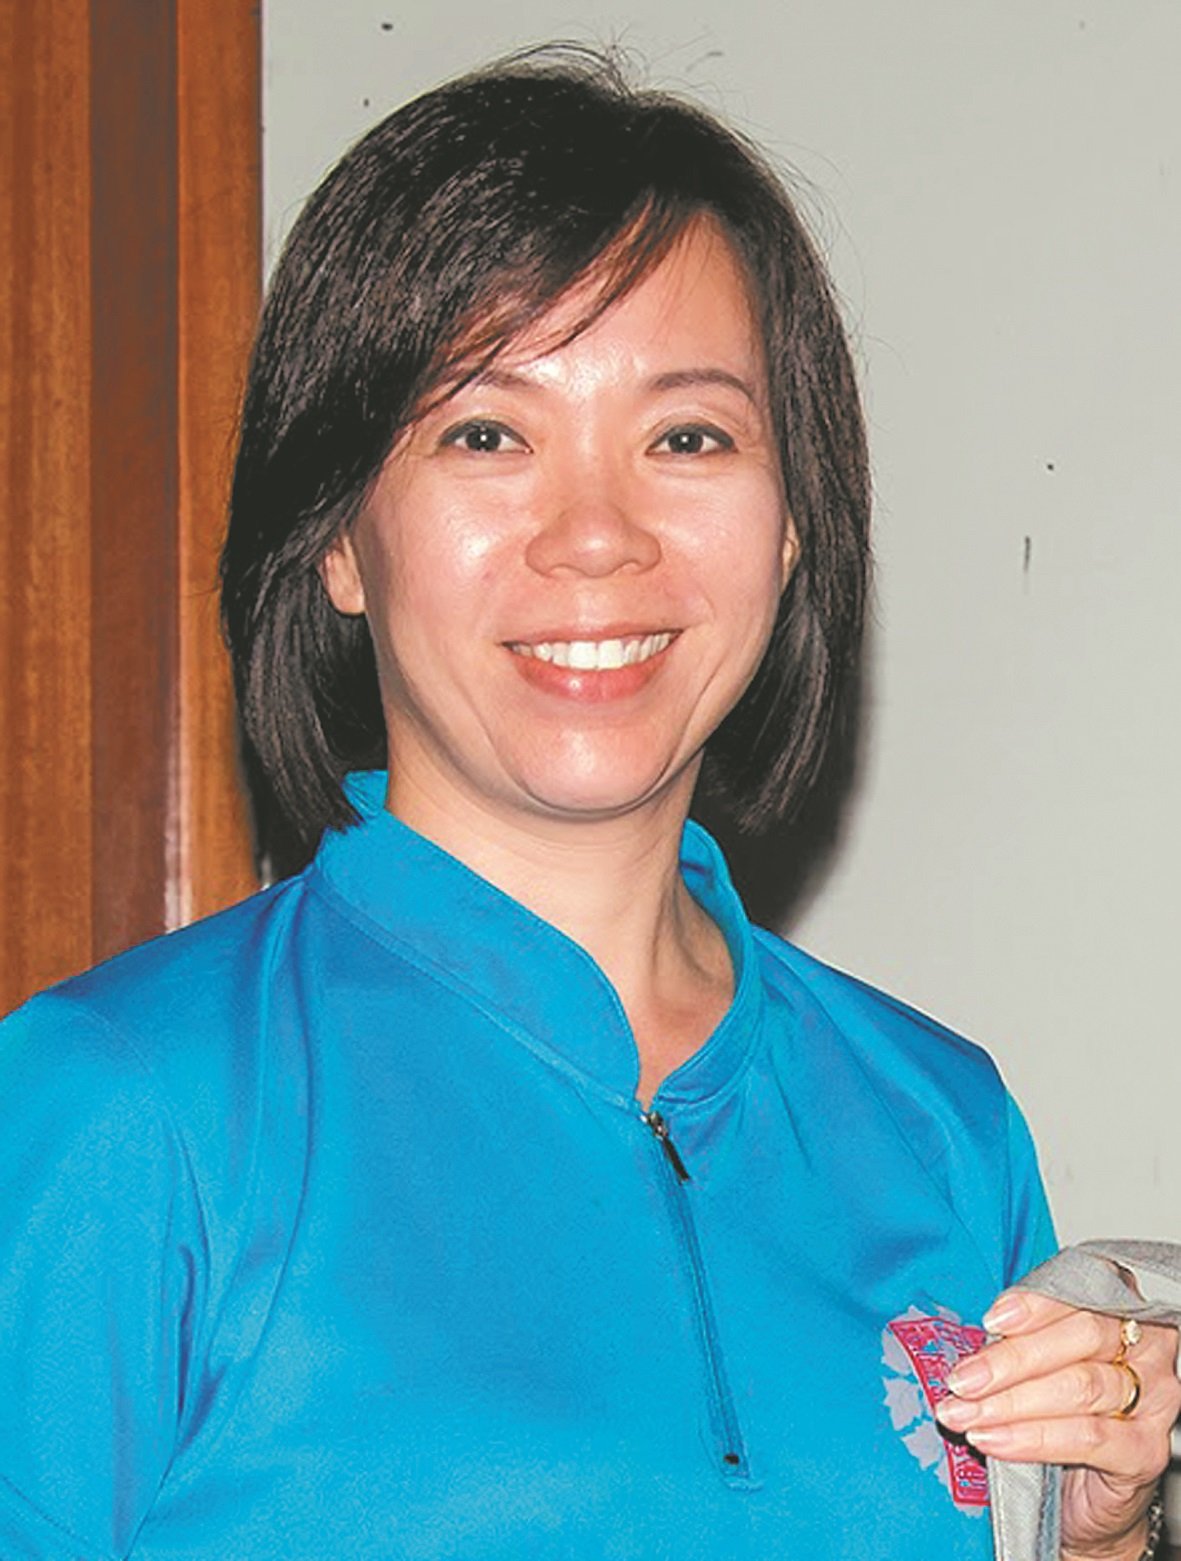 马来西亚中学教师联谊会主席曾俊萍。